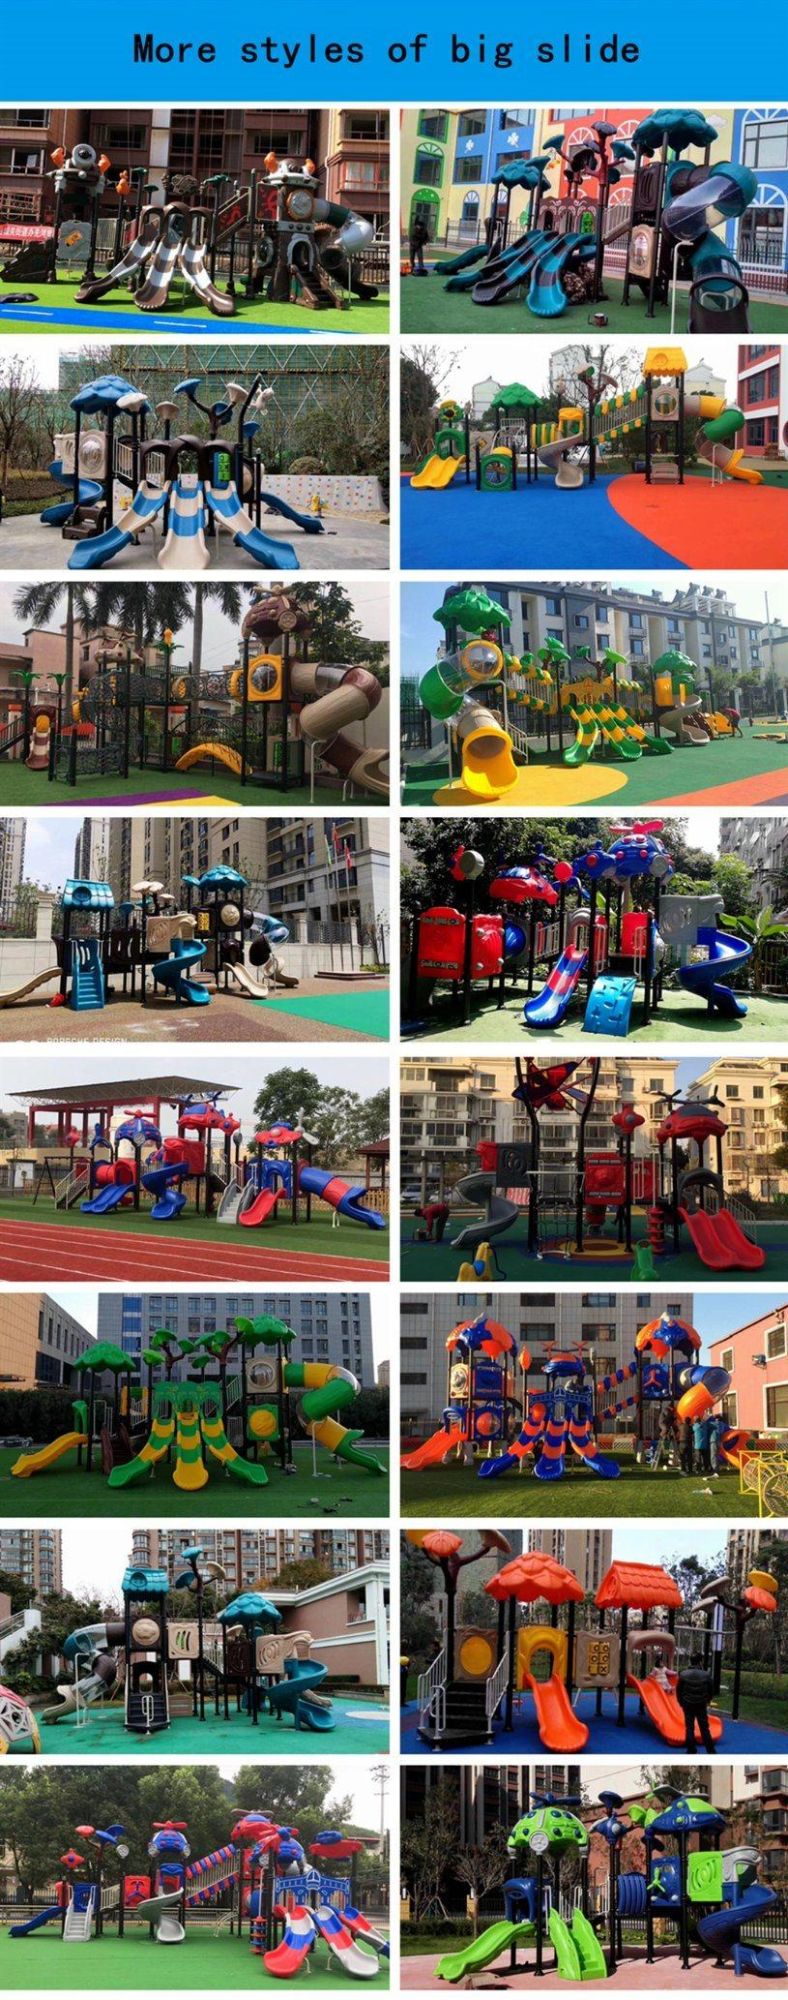 Kindergarten Kids Outdoor Playground Plastic Slide Amusement Park Equipment Swing